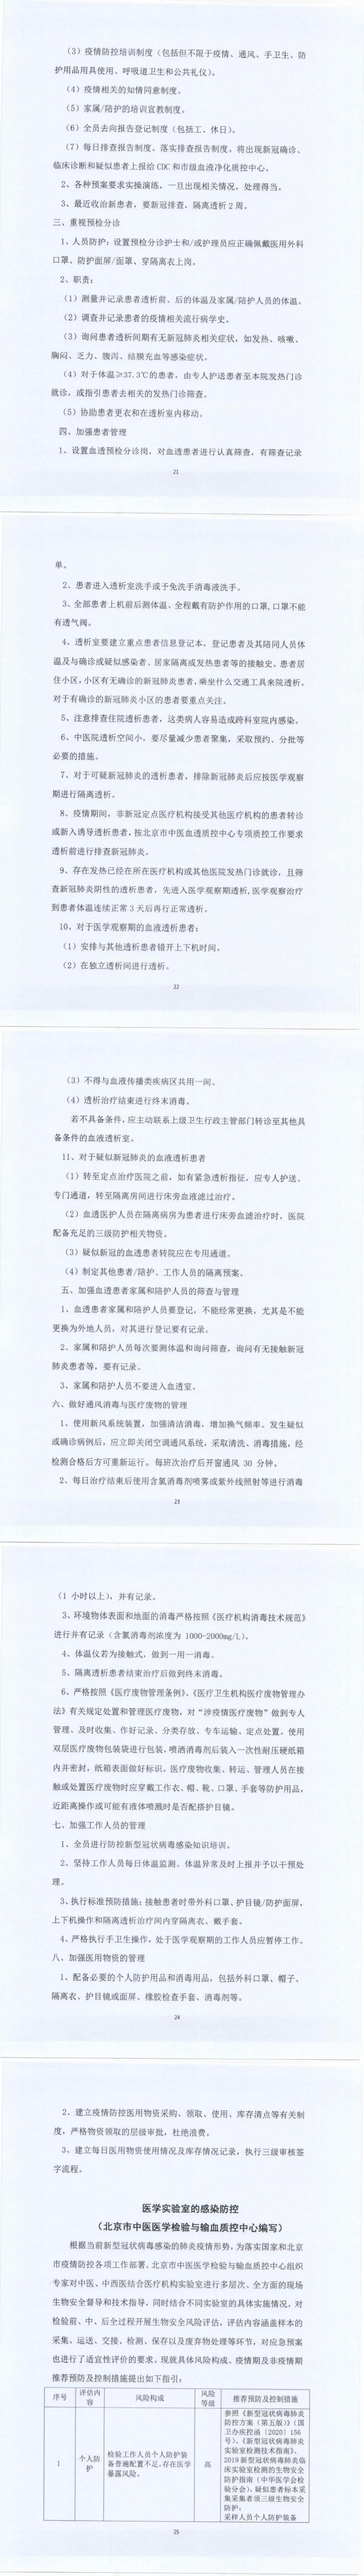 关于北京市中医医疗机构感染防控的指导意见_21-25_0.jpg